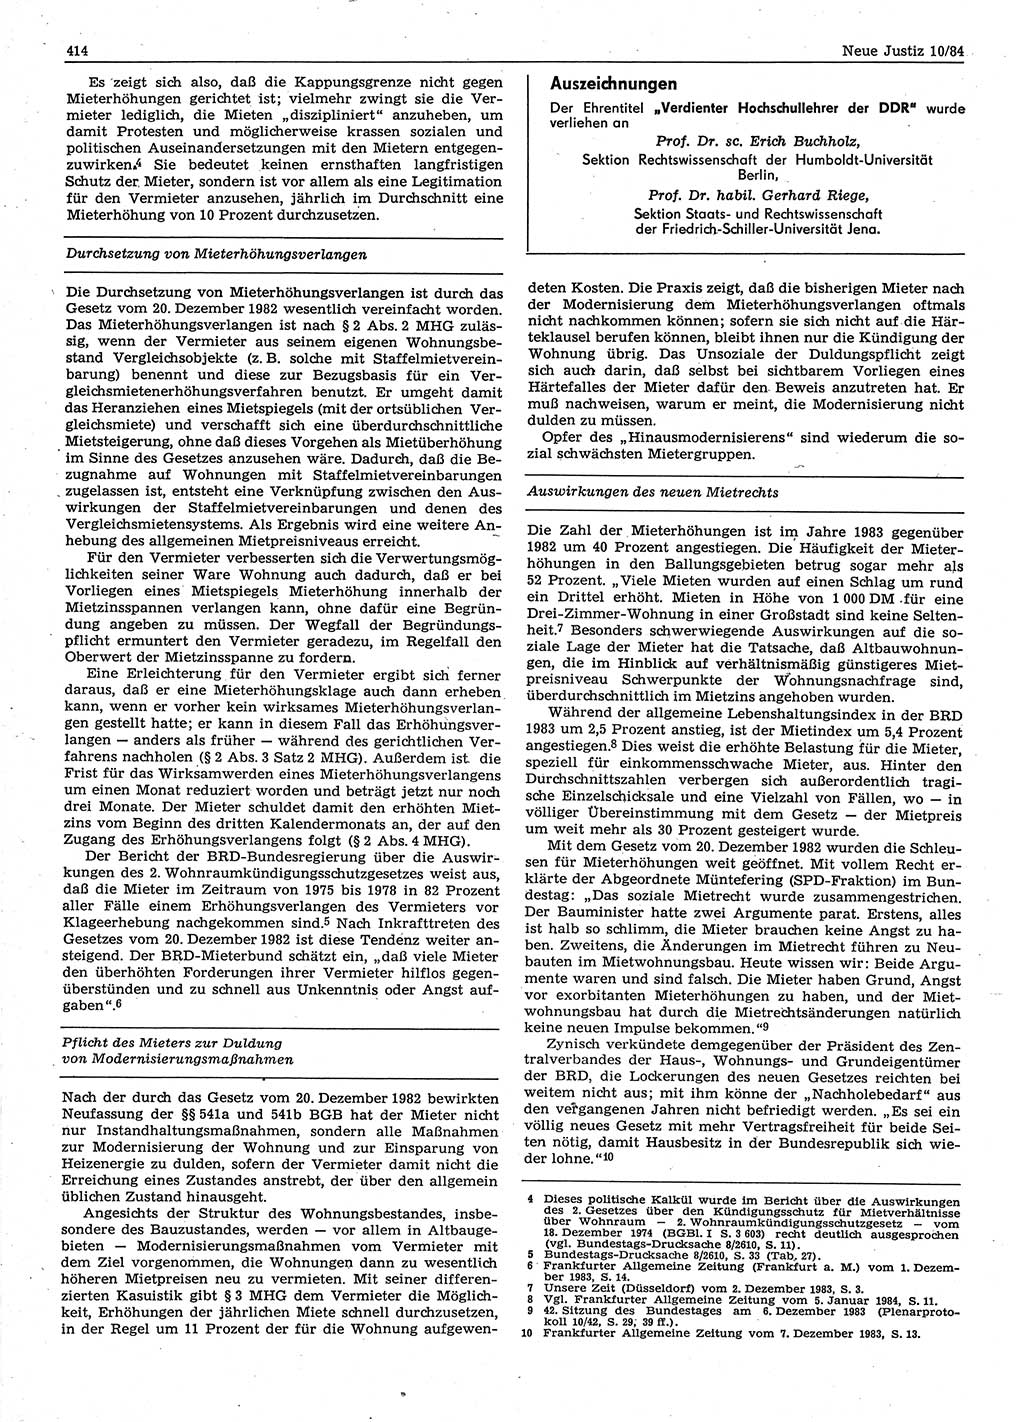 Neue Justiz (NJ), Zeitschrift für sozialistisches Recht und Gesetzlichkeit [Deutsche Demokratische Republik (DDR)], 38. Jahrgang 1984, Seite 414 (NJ DDR 1984, S. 414)